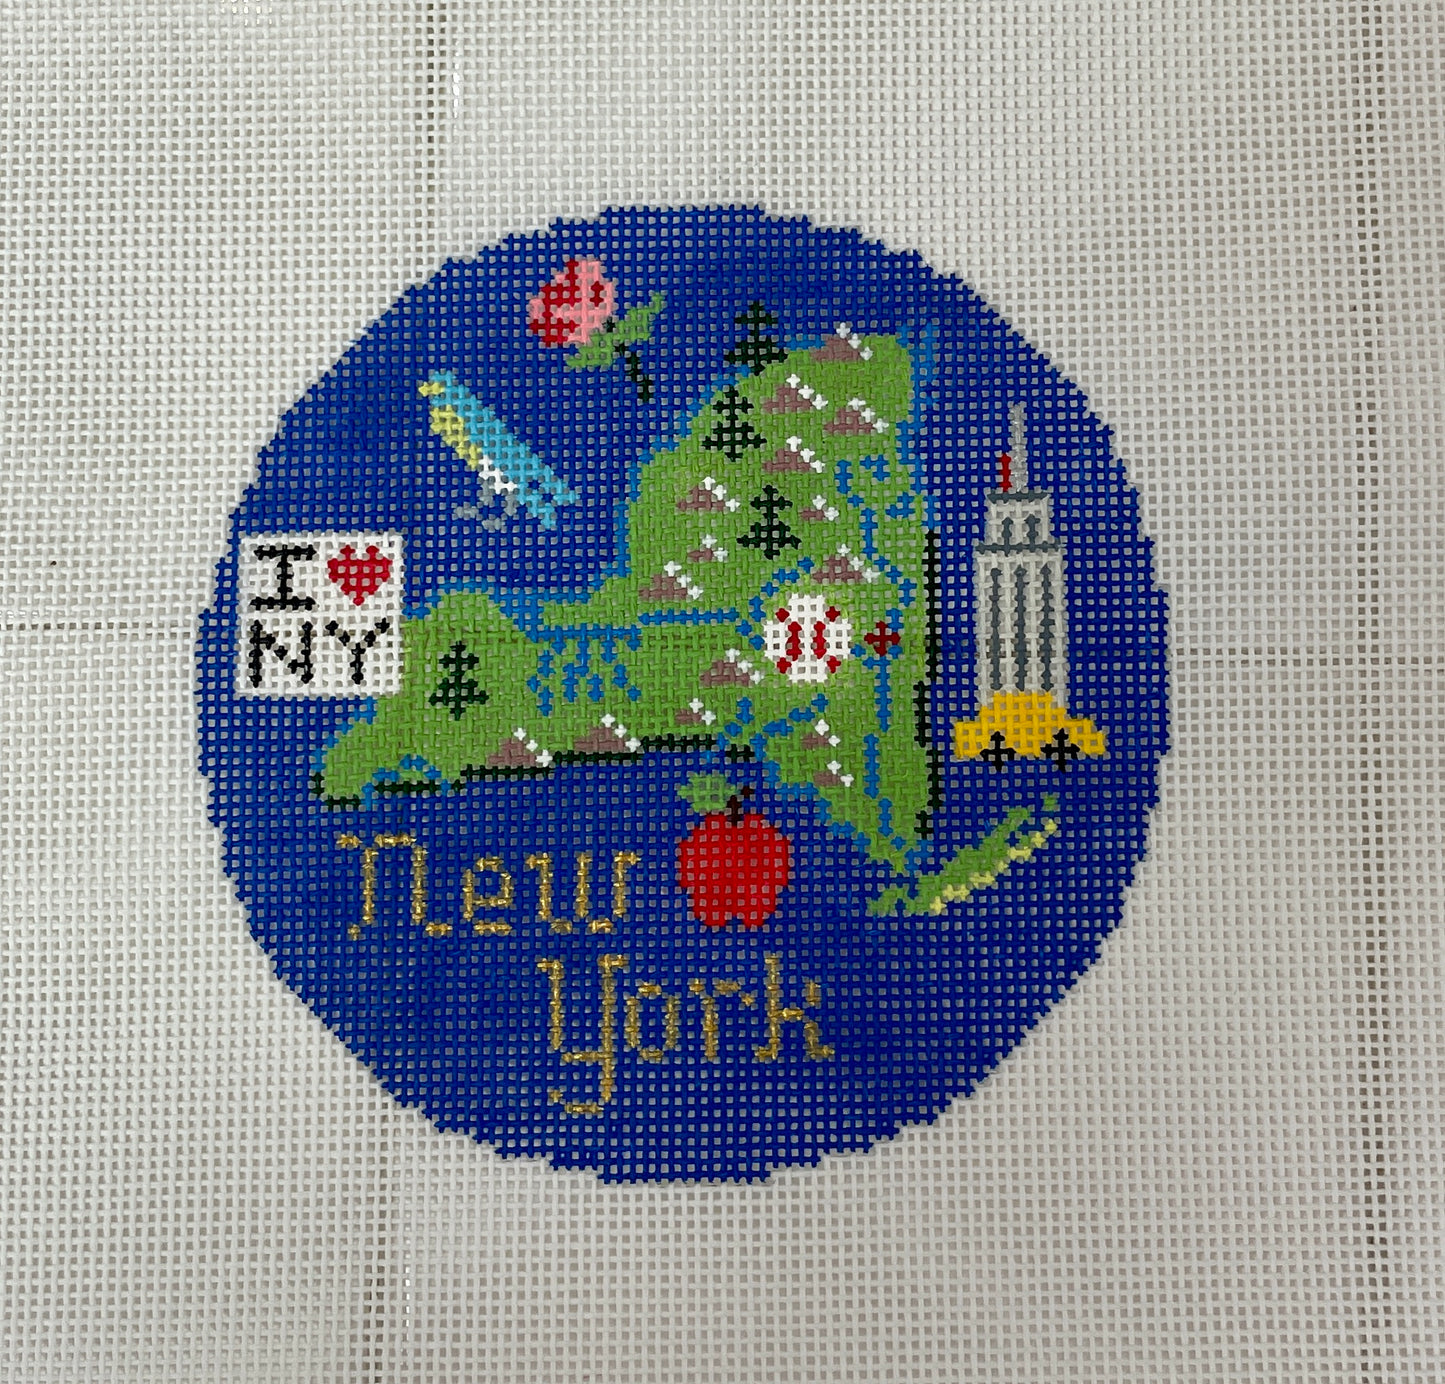 New York State Travel Round